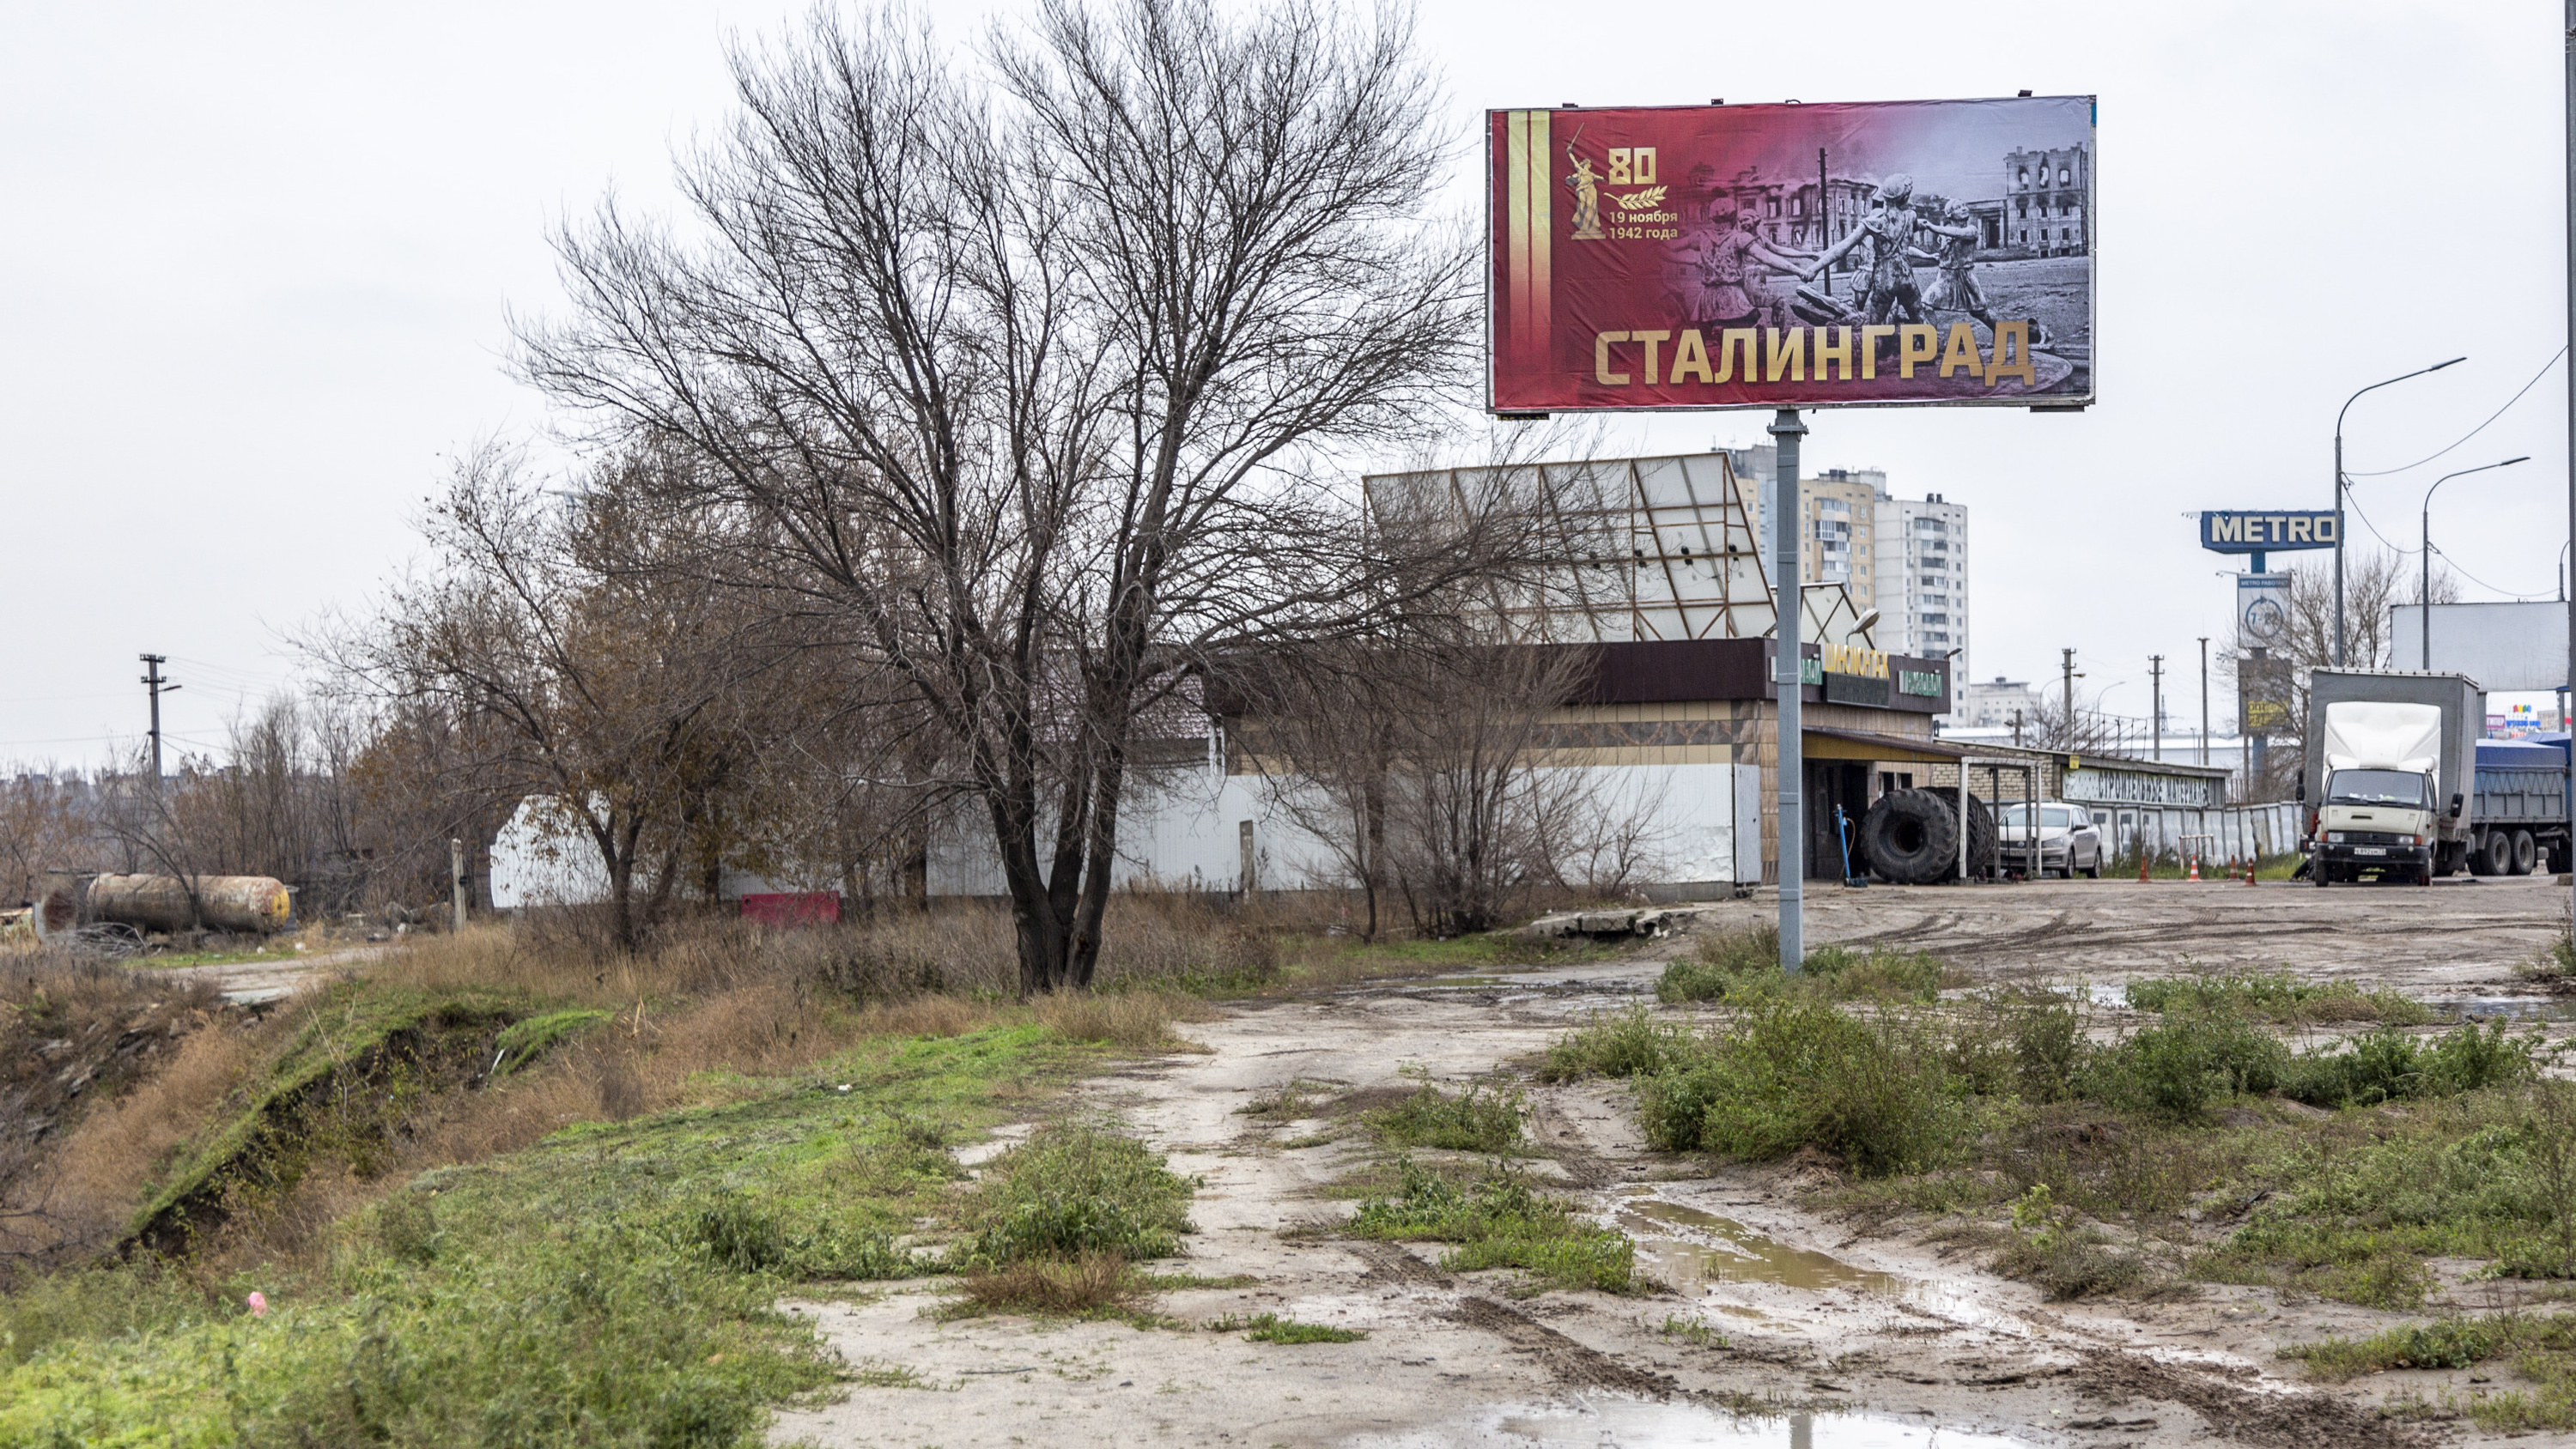 «Считаю эту идею глупой и вредной»: волгоградка высказалась о переименовании города в Сталинград